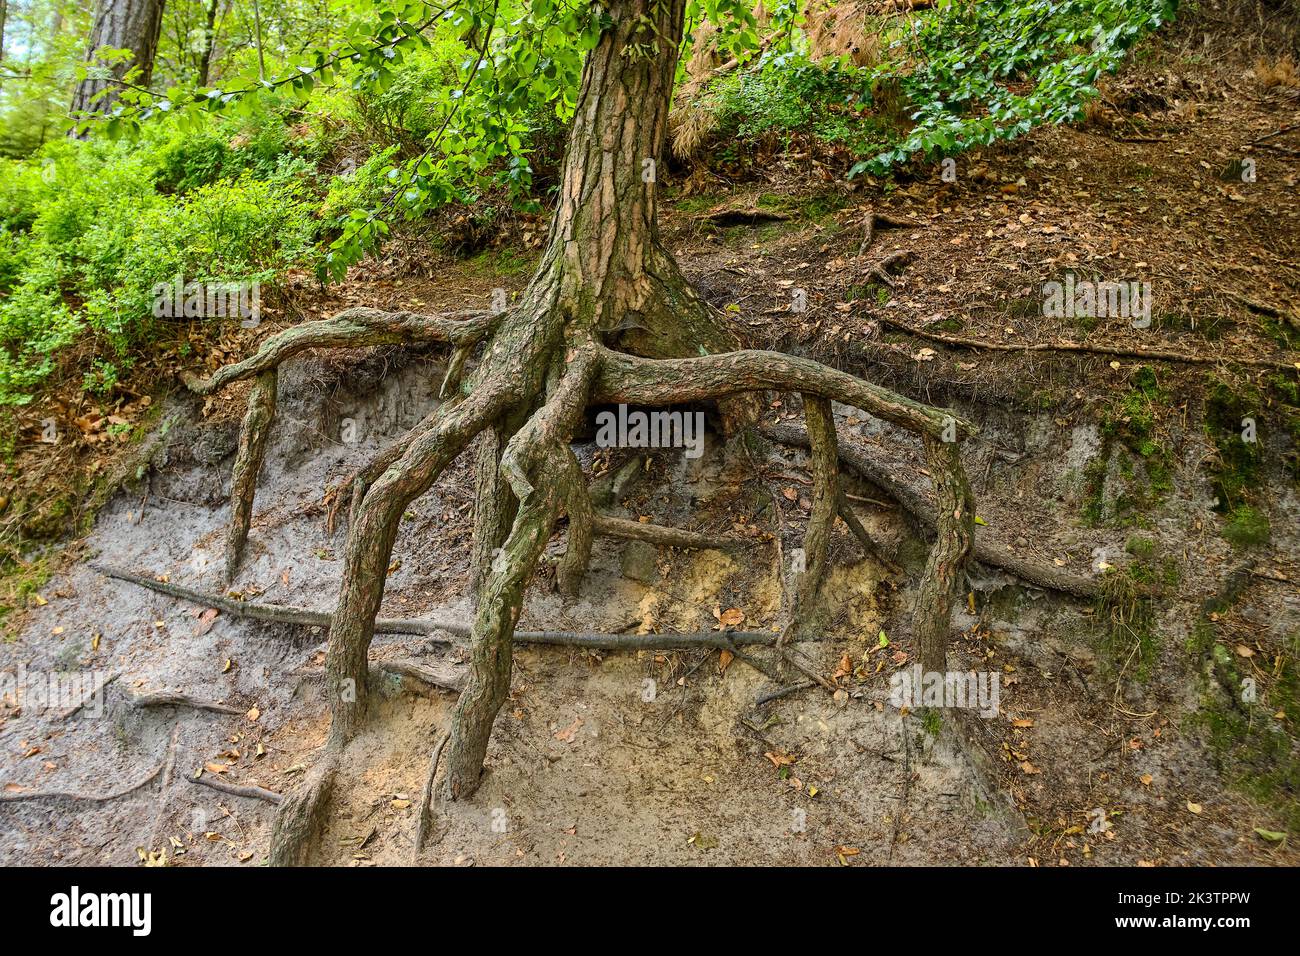 Albero con radici esposte sul bordo di un pendio in un ambiente forestale. Foto Stock